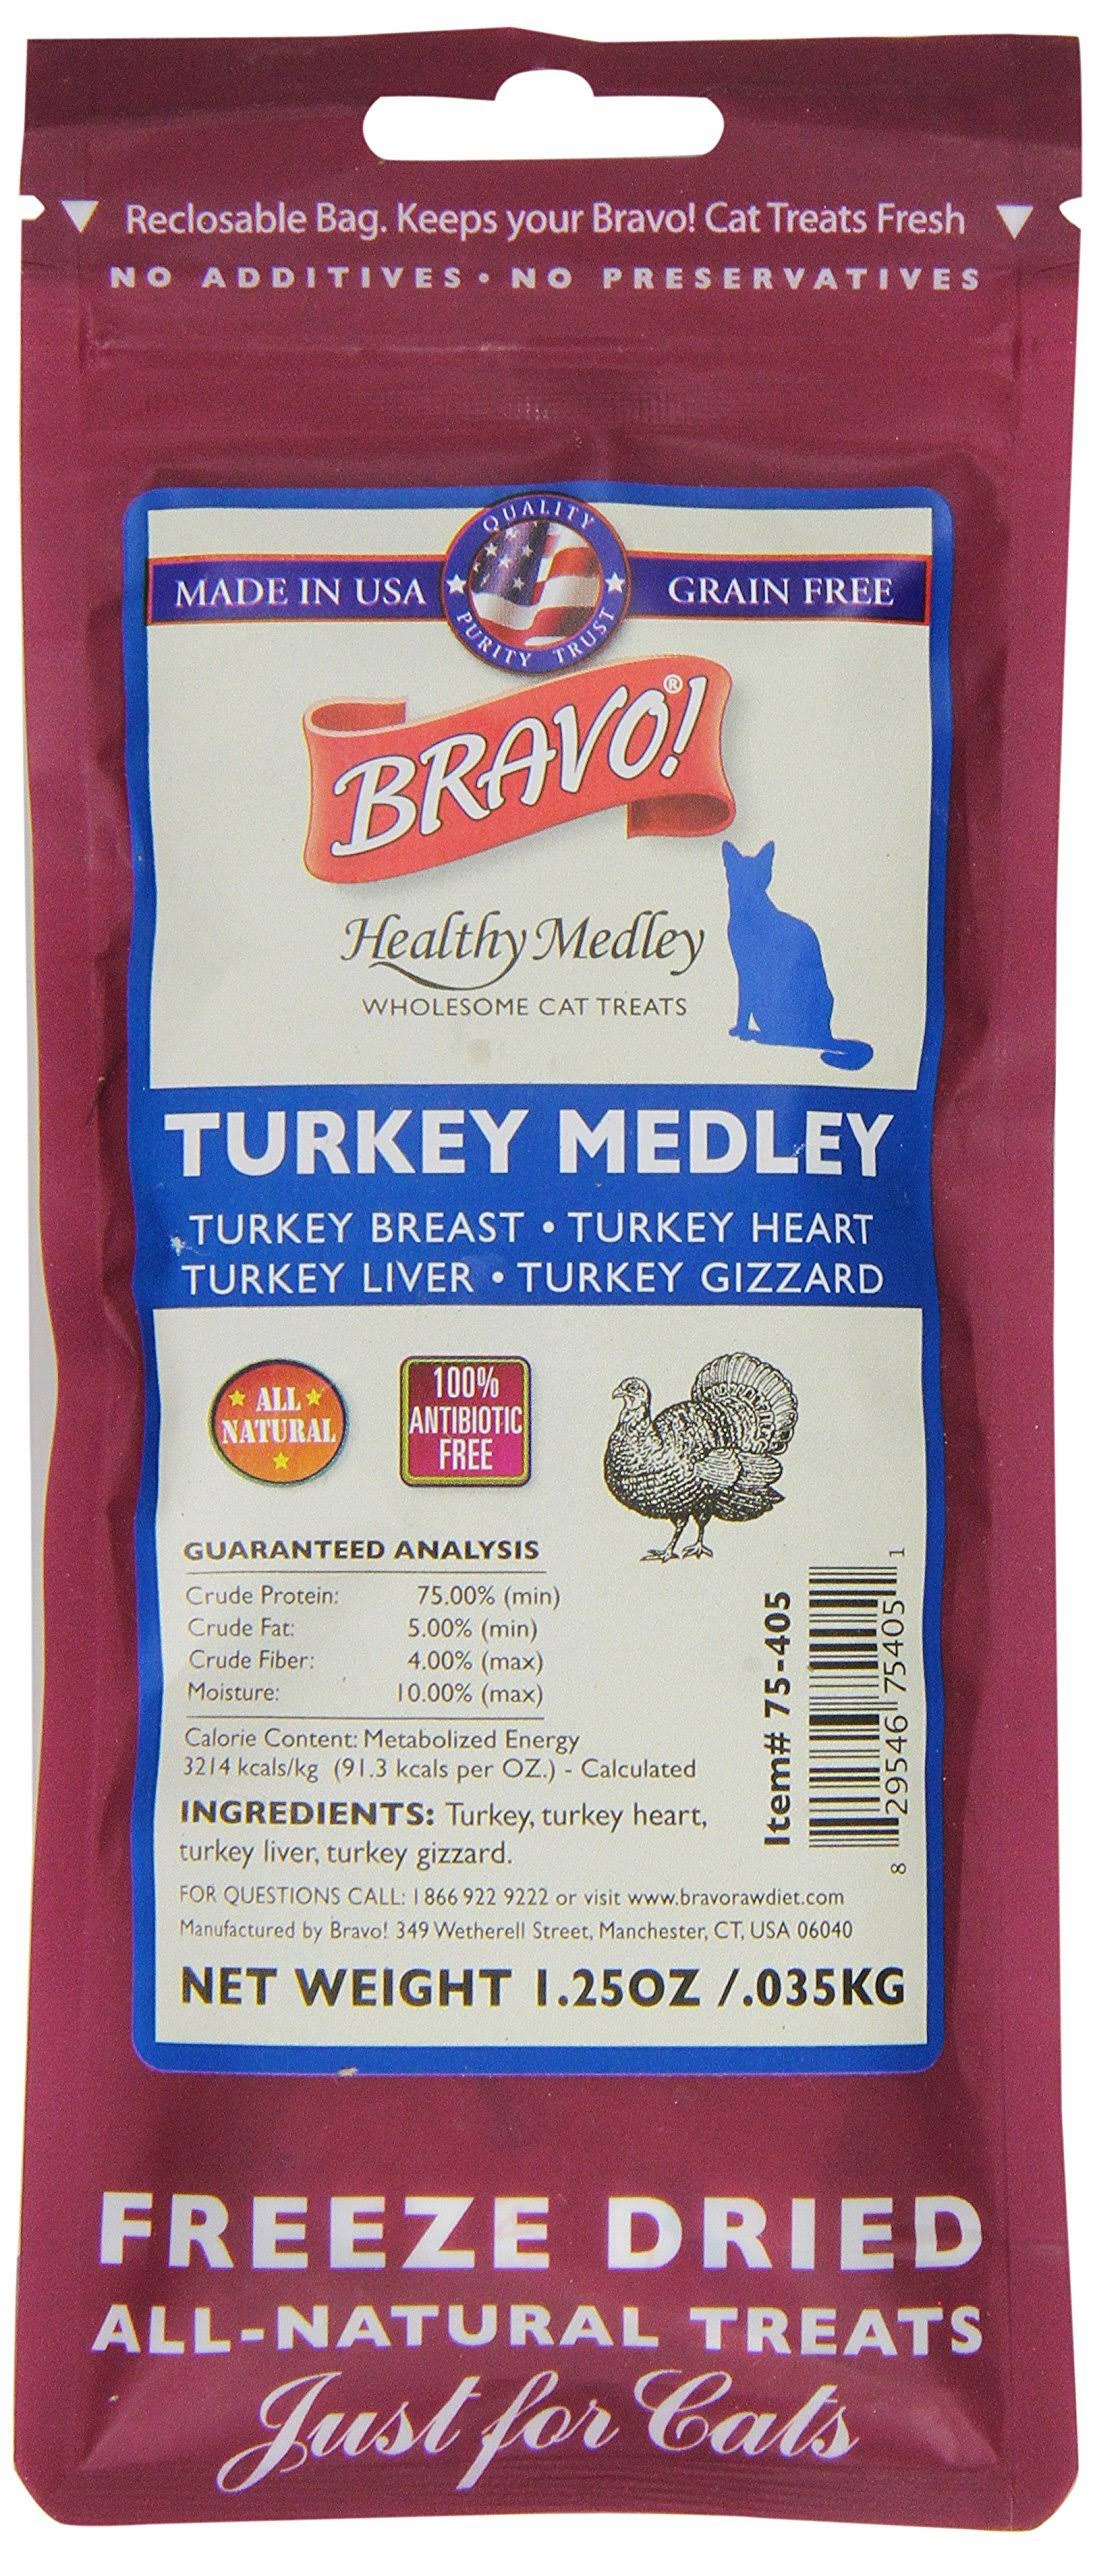 Bravo Freeze Dried Dog Treats - Turkey Medley